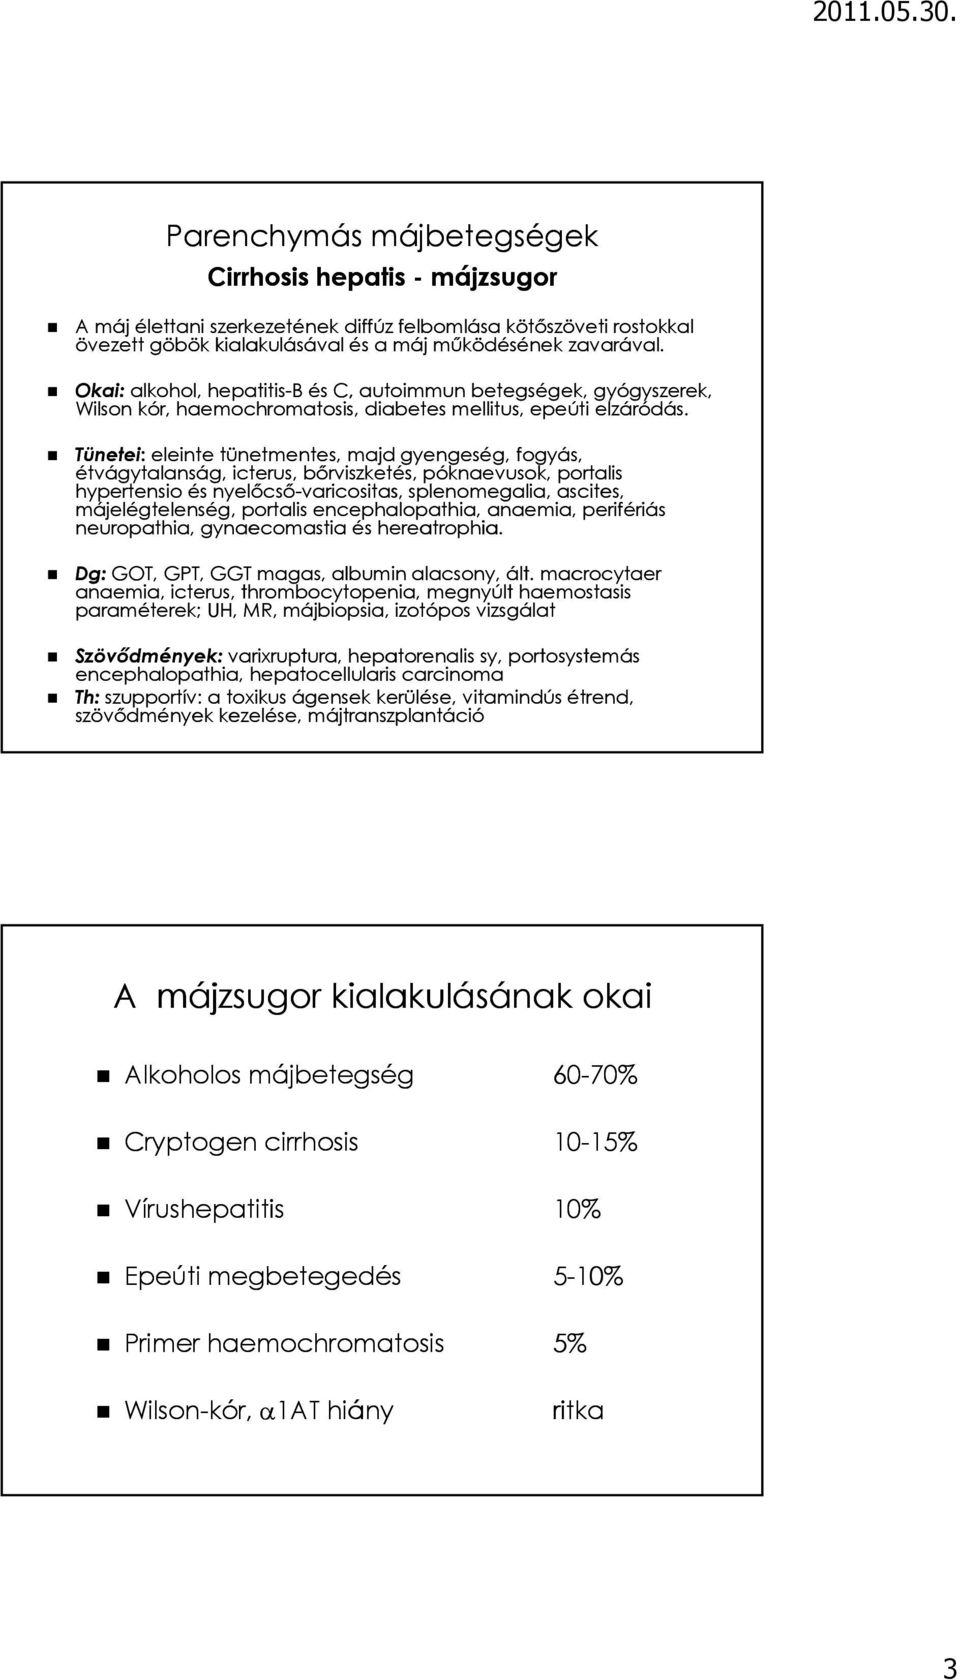 Májzsugorodás (májcirrózis) tünetei és kezelése - HáziPatika